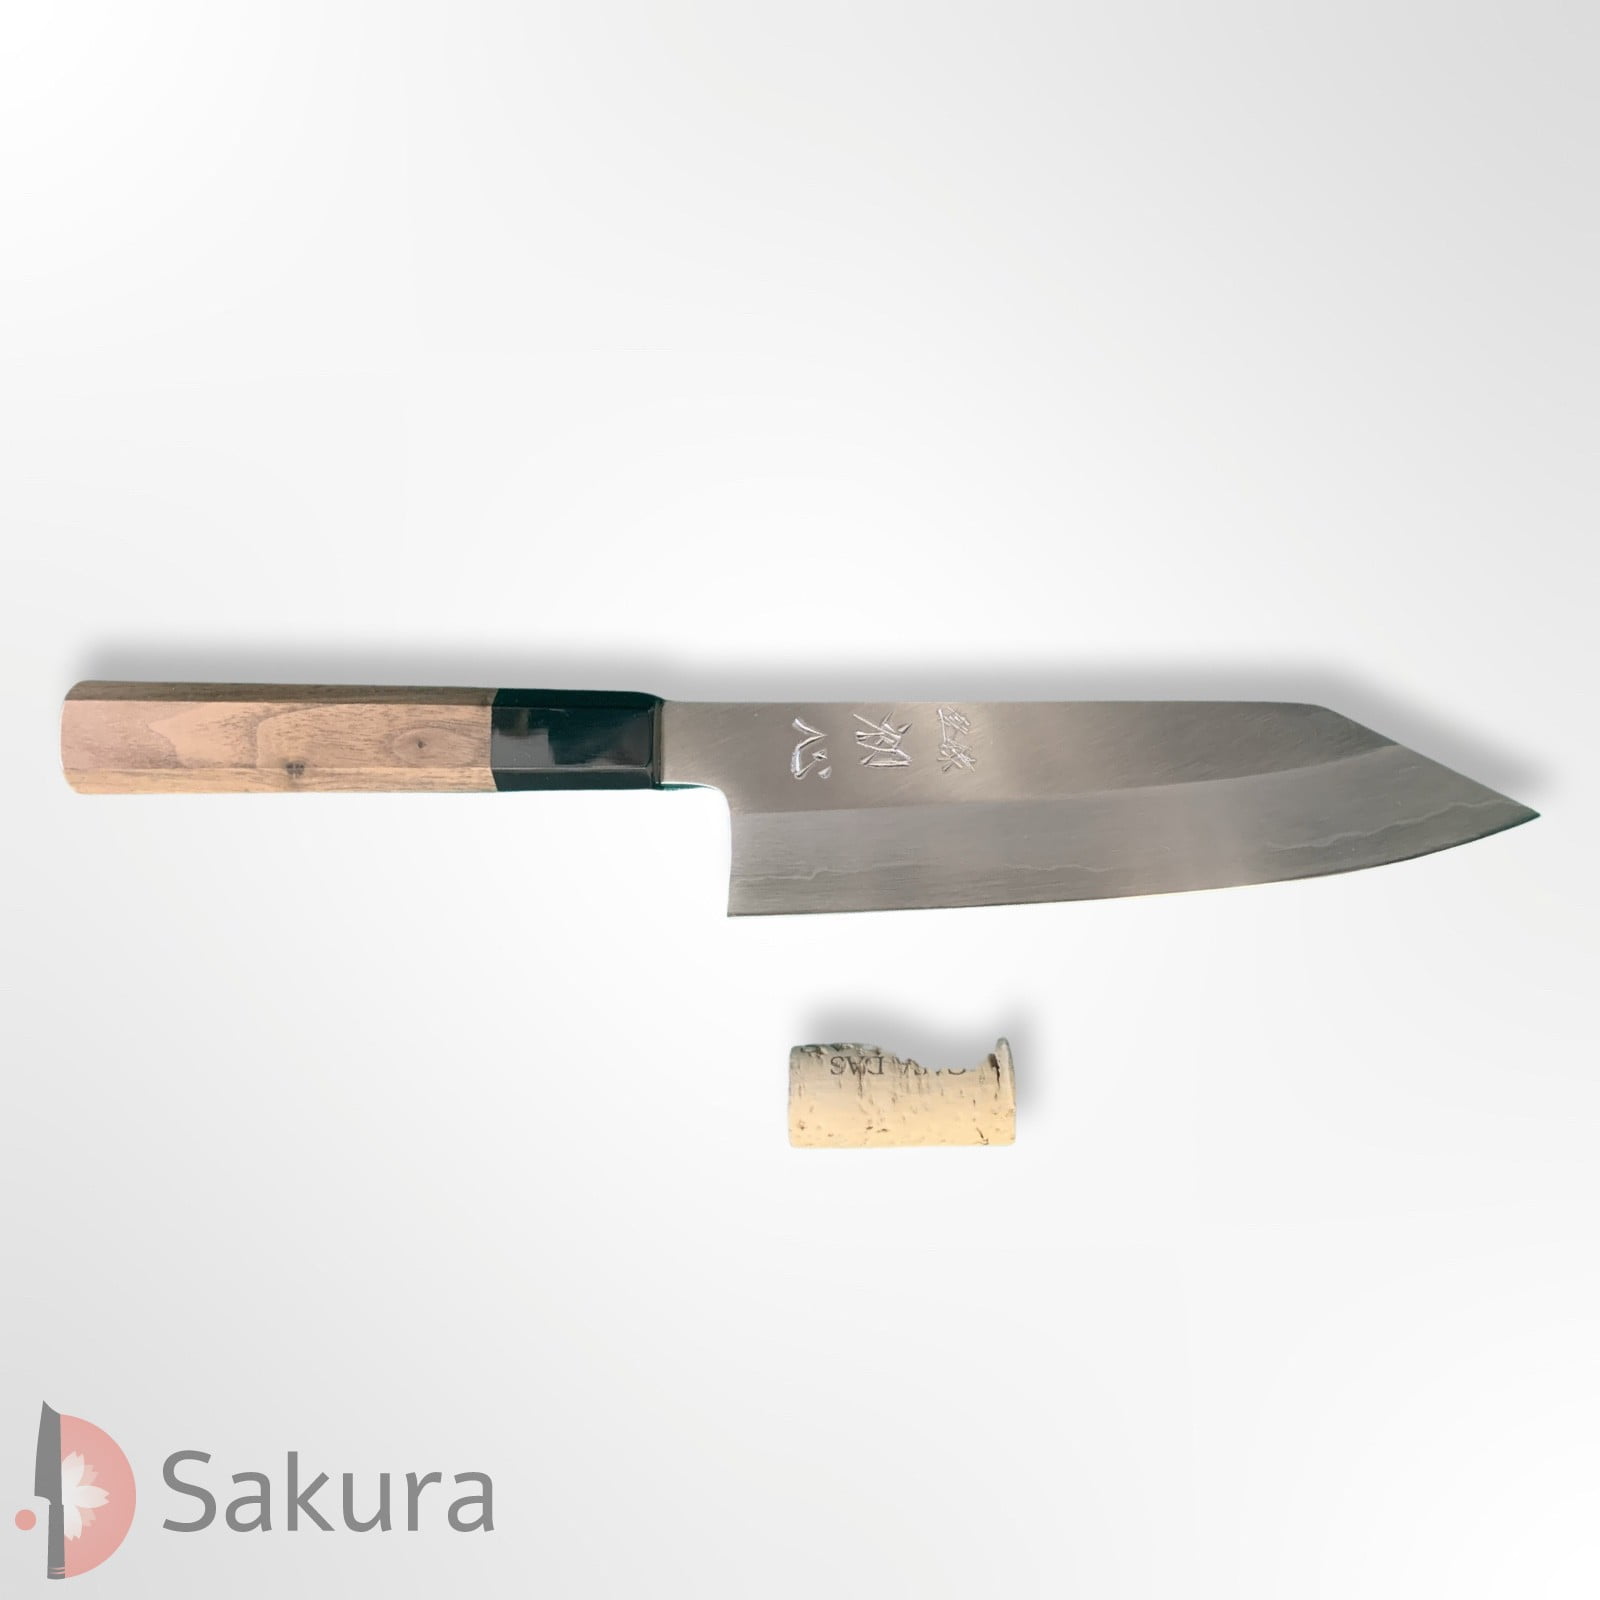 סכין רב-תכליתית בּוּנְקָה 170מ״מ מחושלת בעבודת יד 3 שכבות: פלדת פחמן יפנית מתקדמת מסוג Ginsan Silver#3 עטופה פלדת אל-חלד גימור מט מלוטש נאקאגאווה המונו יפן – SKNAKAS3BUNK16544